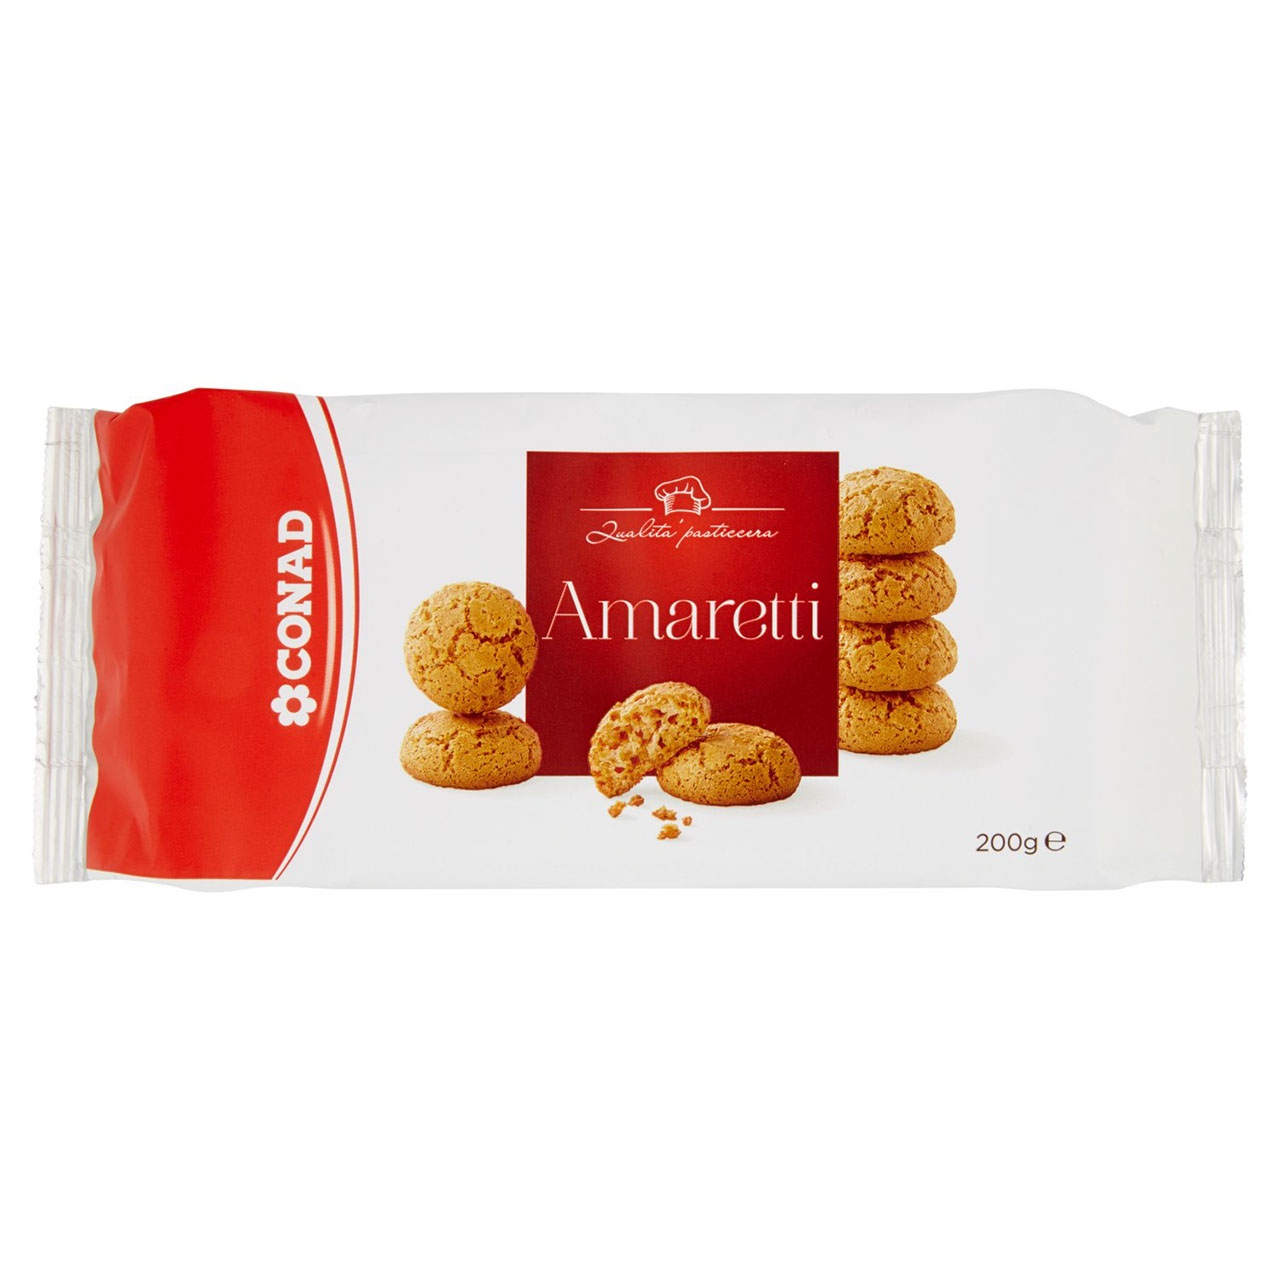 Amaretti 200 g Conad in vendita online